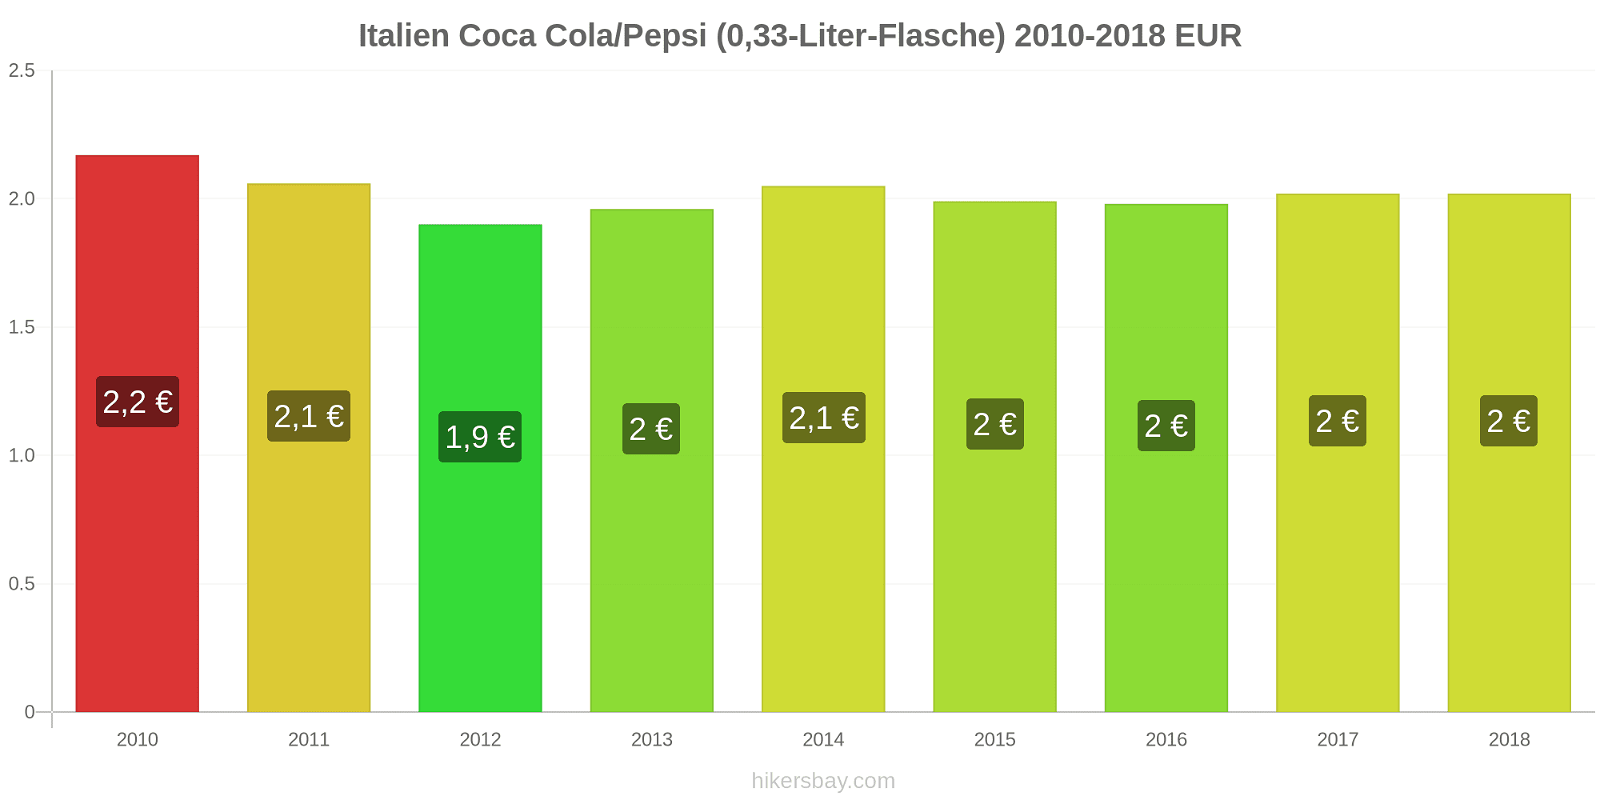 Italien Preisänderungen Coke/Pepsi (0,33-Liter-Flasche) hikersbay.com